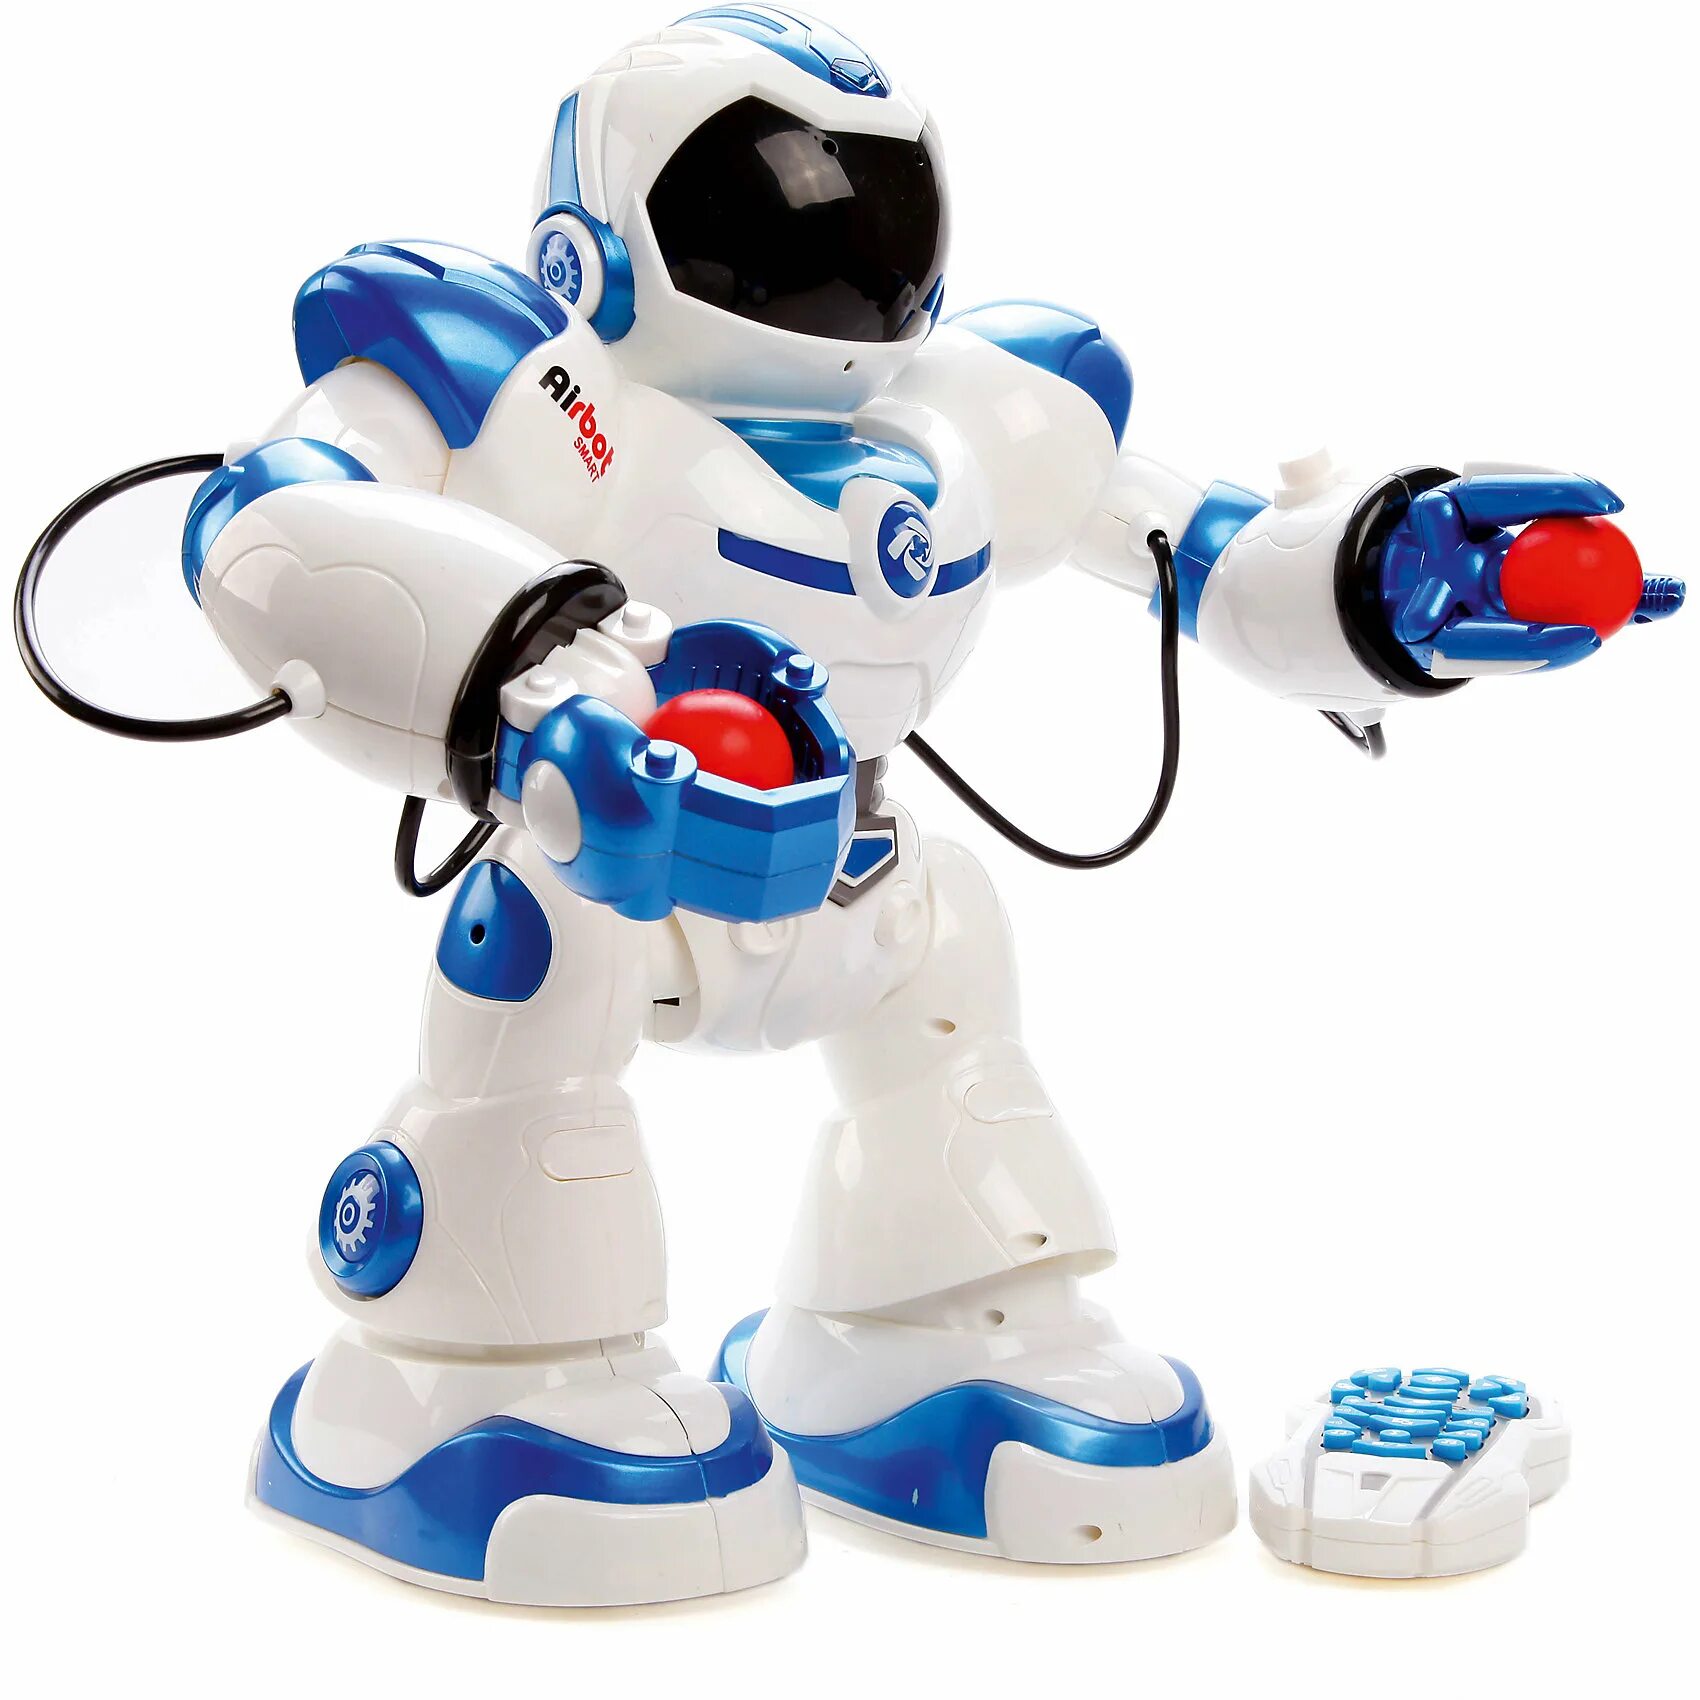 Робот пульт машина. Радиоуправляемый робот - 5088b. Игрушка робот радиоуправляемый артикул 66106. Игрушка робот 0457 Toys Smart Robot на радиоуправлении 606-11-y. Робот Airbot интерактивный артикул 62082225.